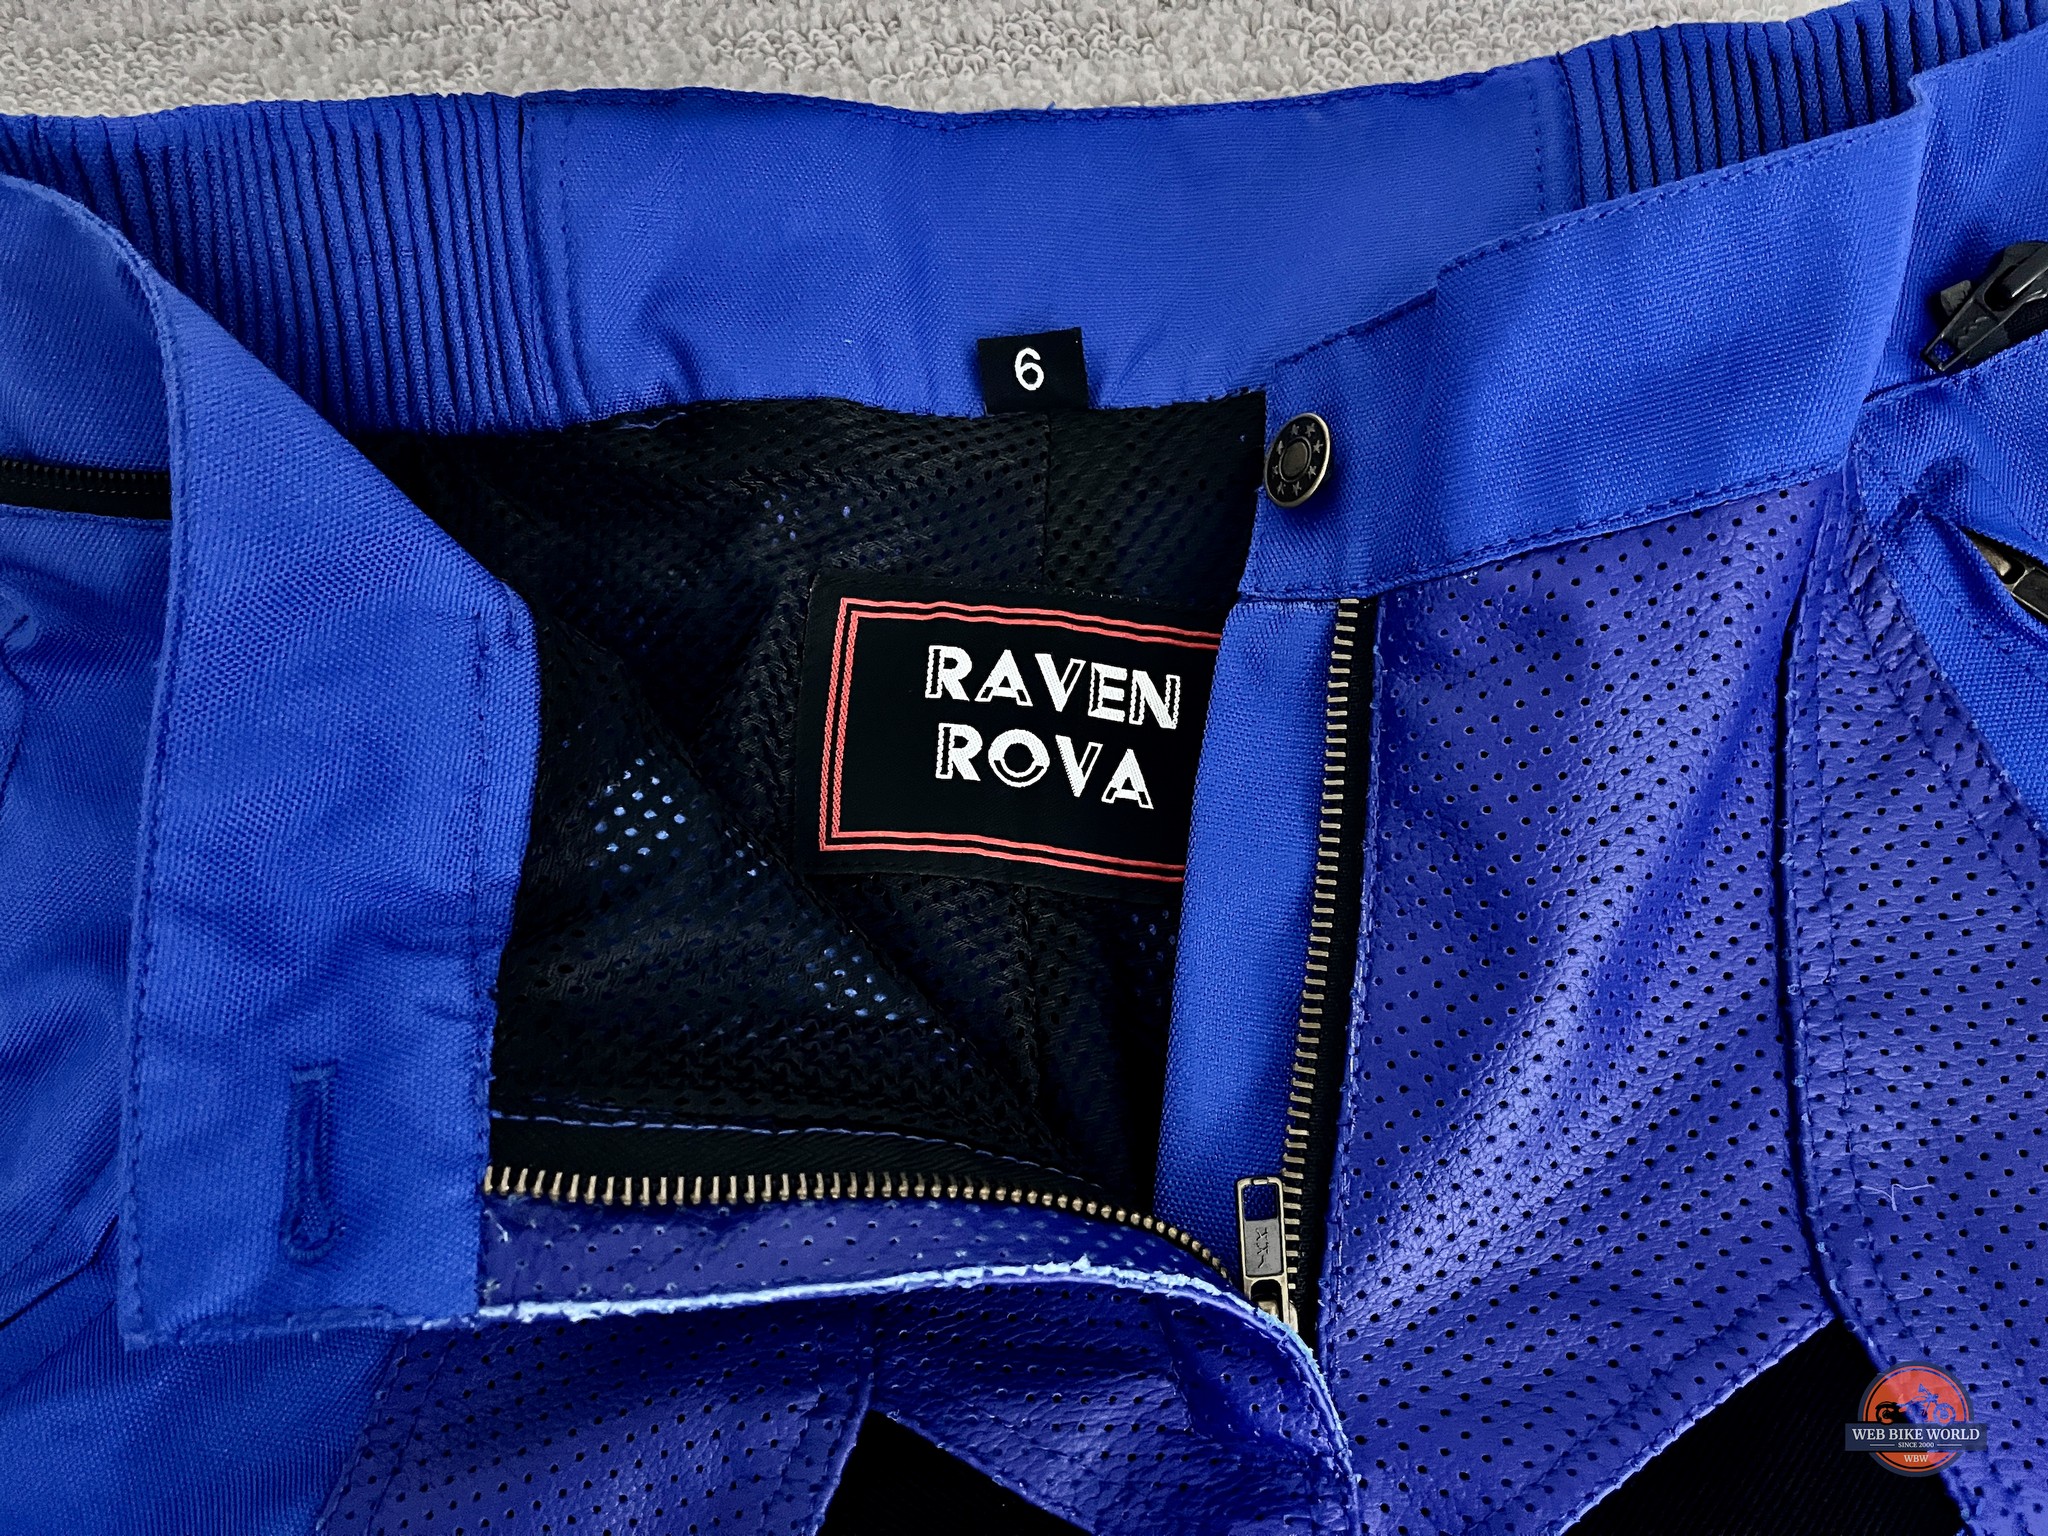 Closeup of the waist zipper and brand logo